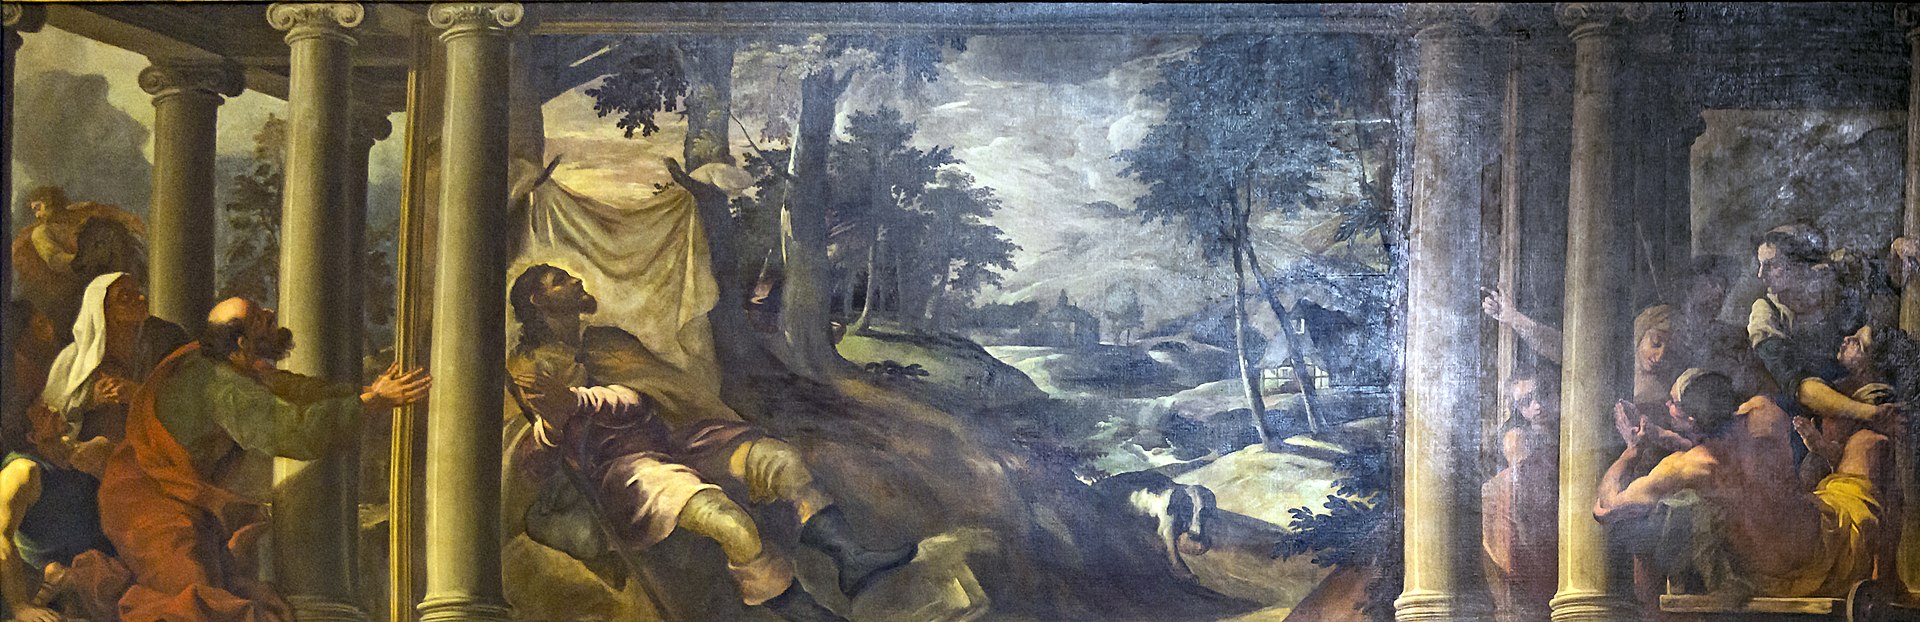 San Rocco Venezia interno. San Rocco colpito dalla peste. Tintoretto